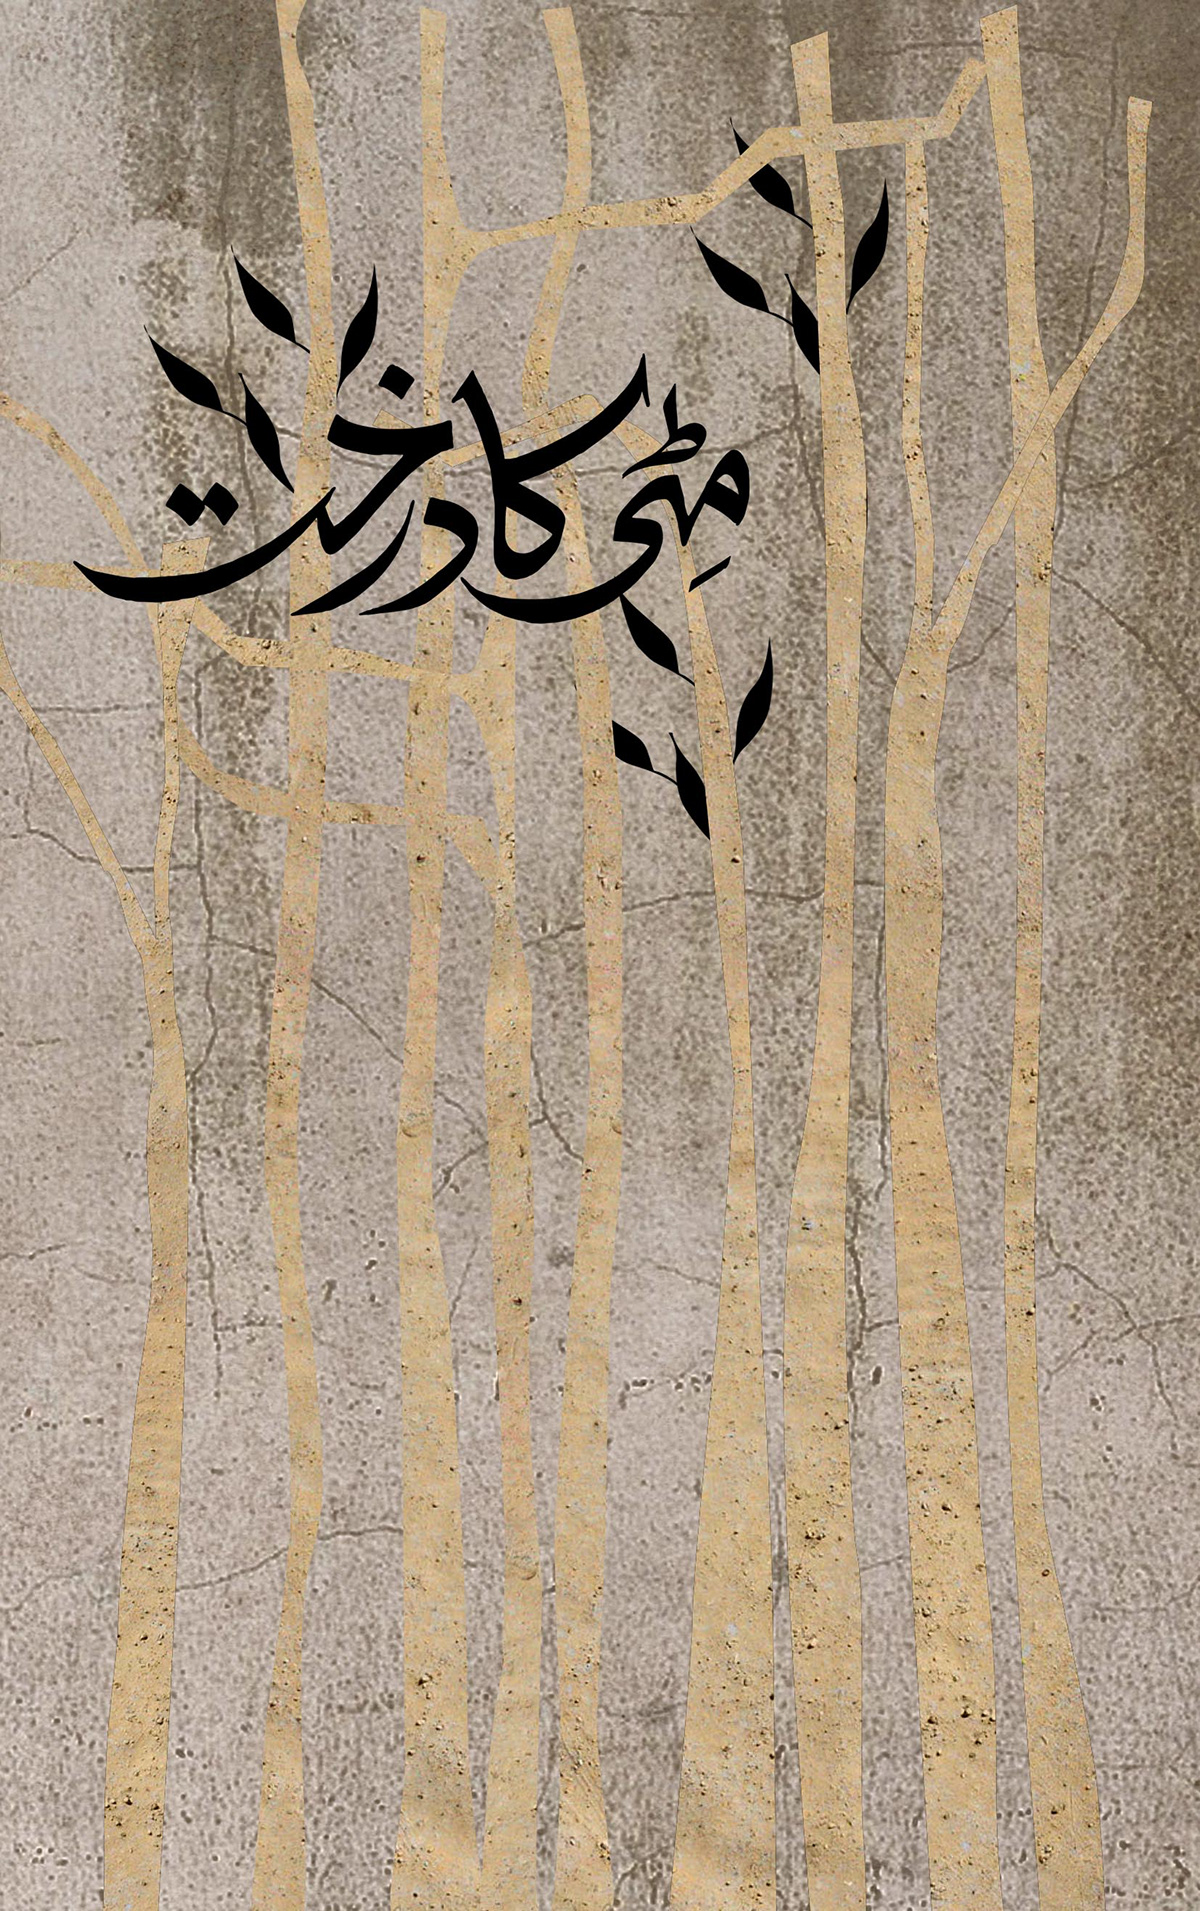 mitti ka darkht Urdu book  cover design